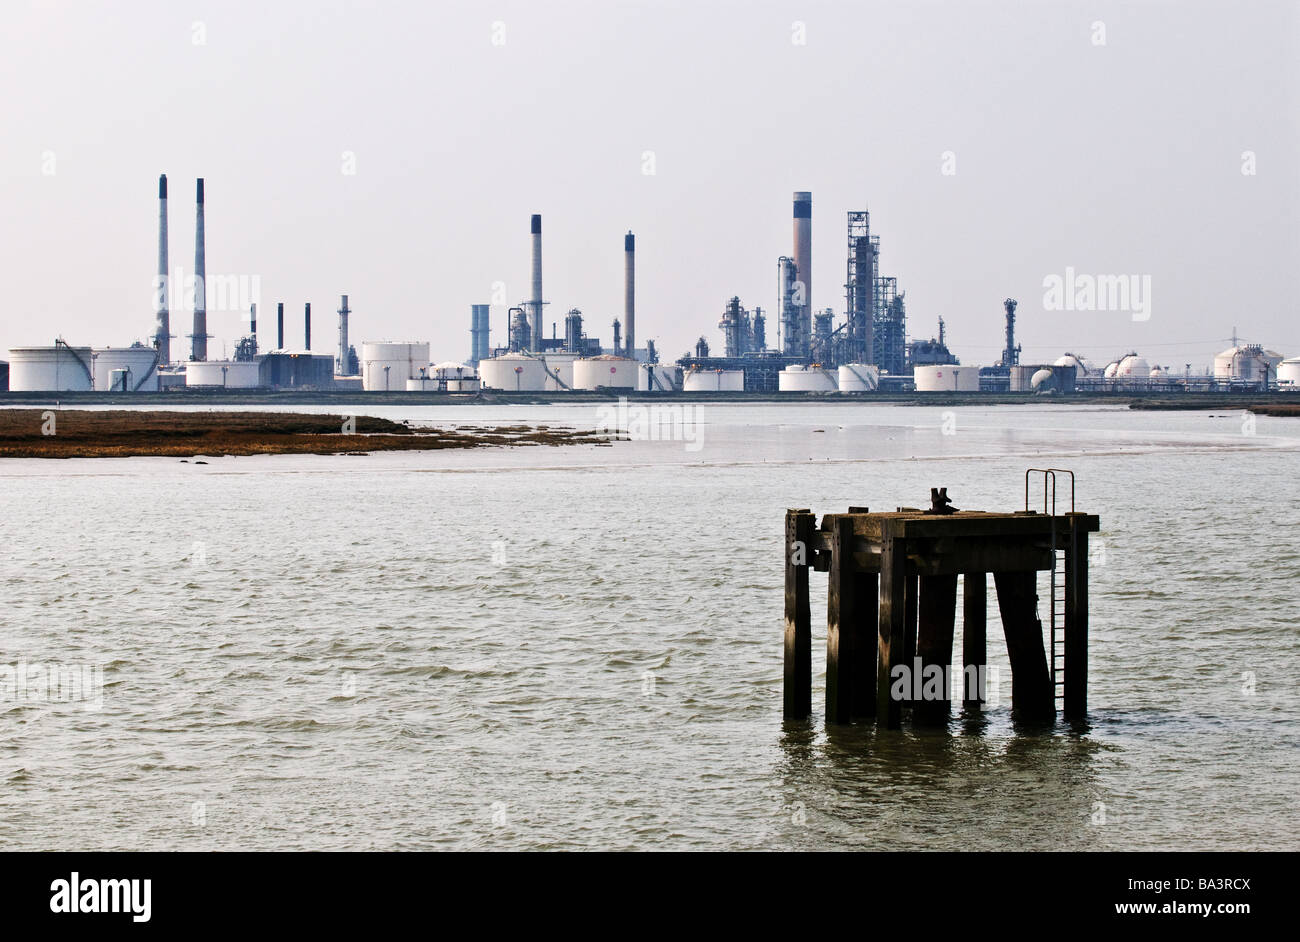 La raffineria di olio Coryton smantellata in Essex. Foto Stock